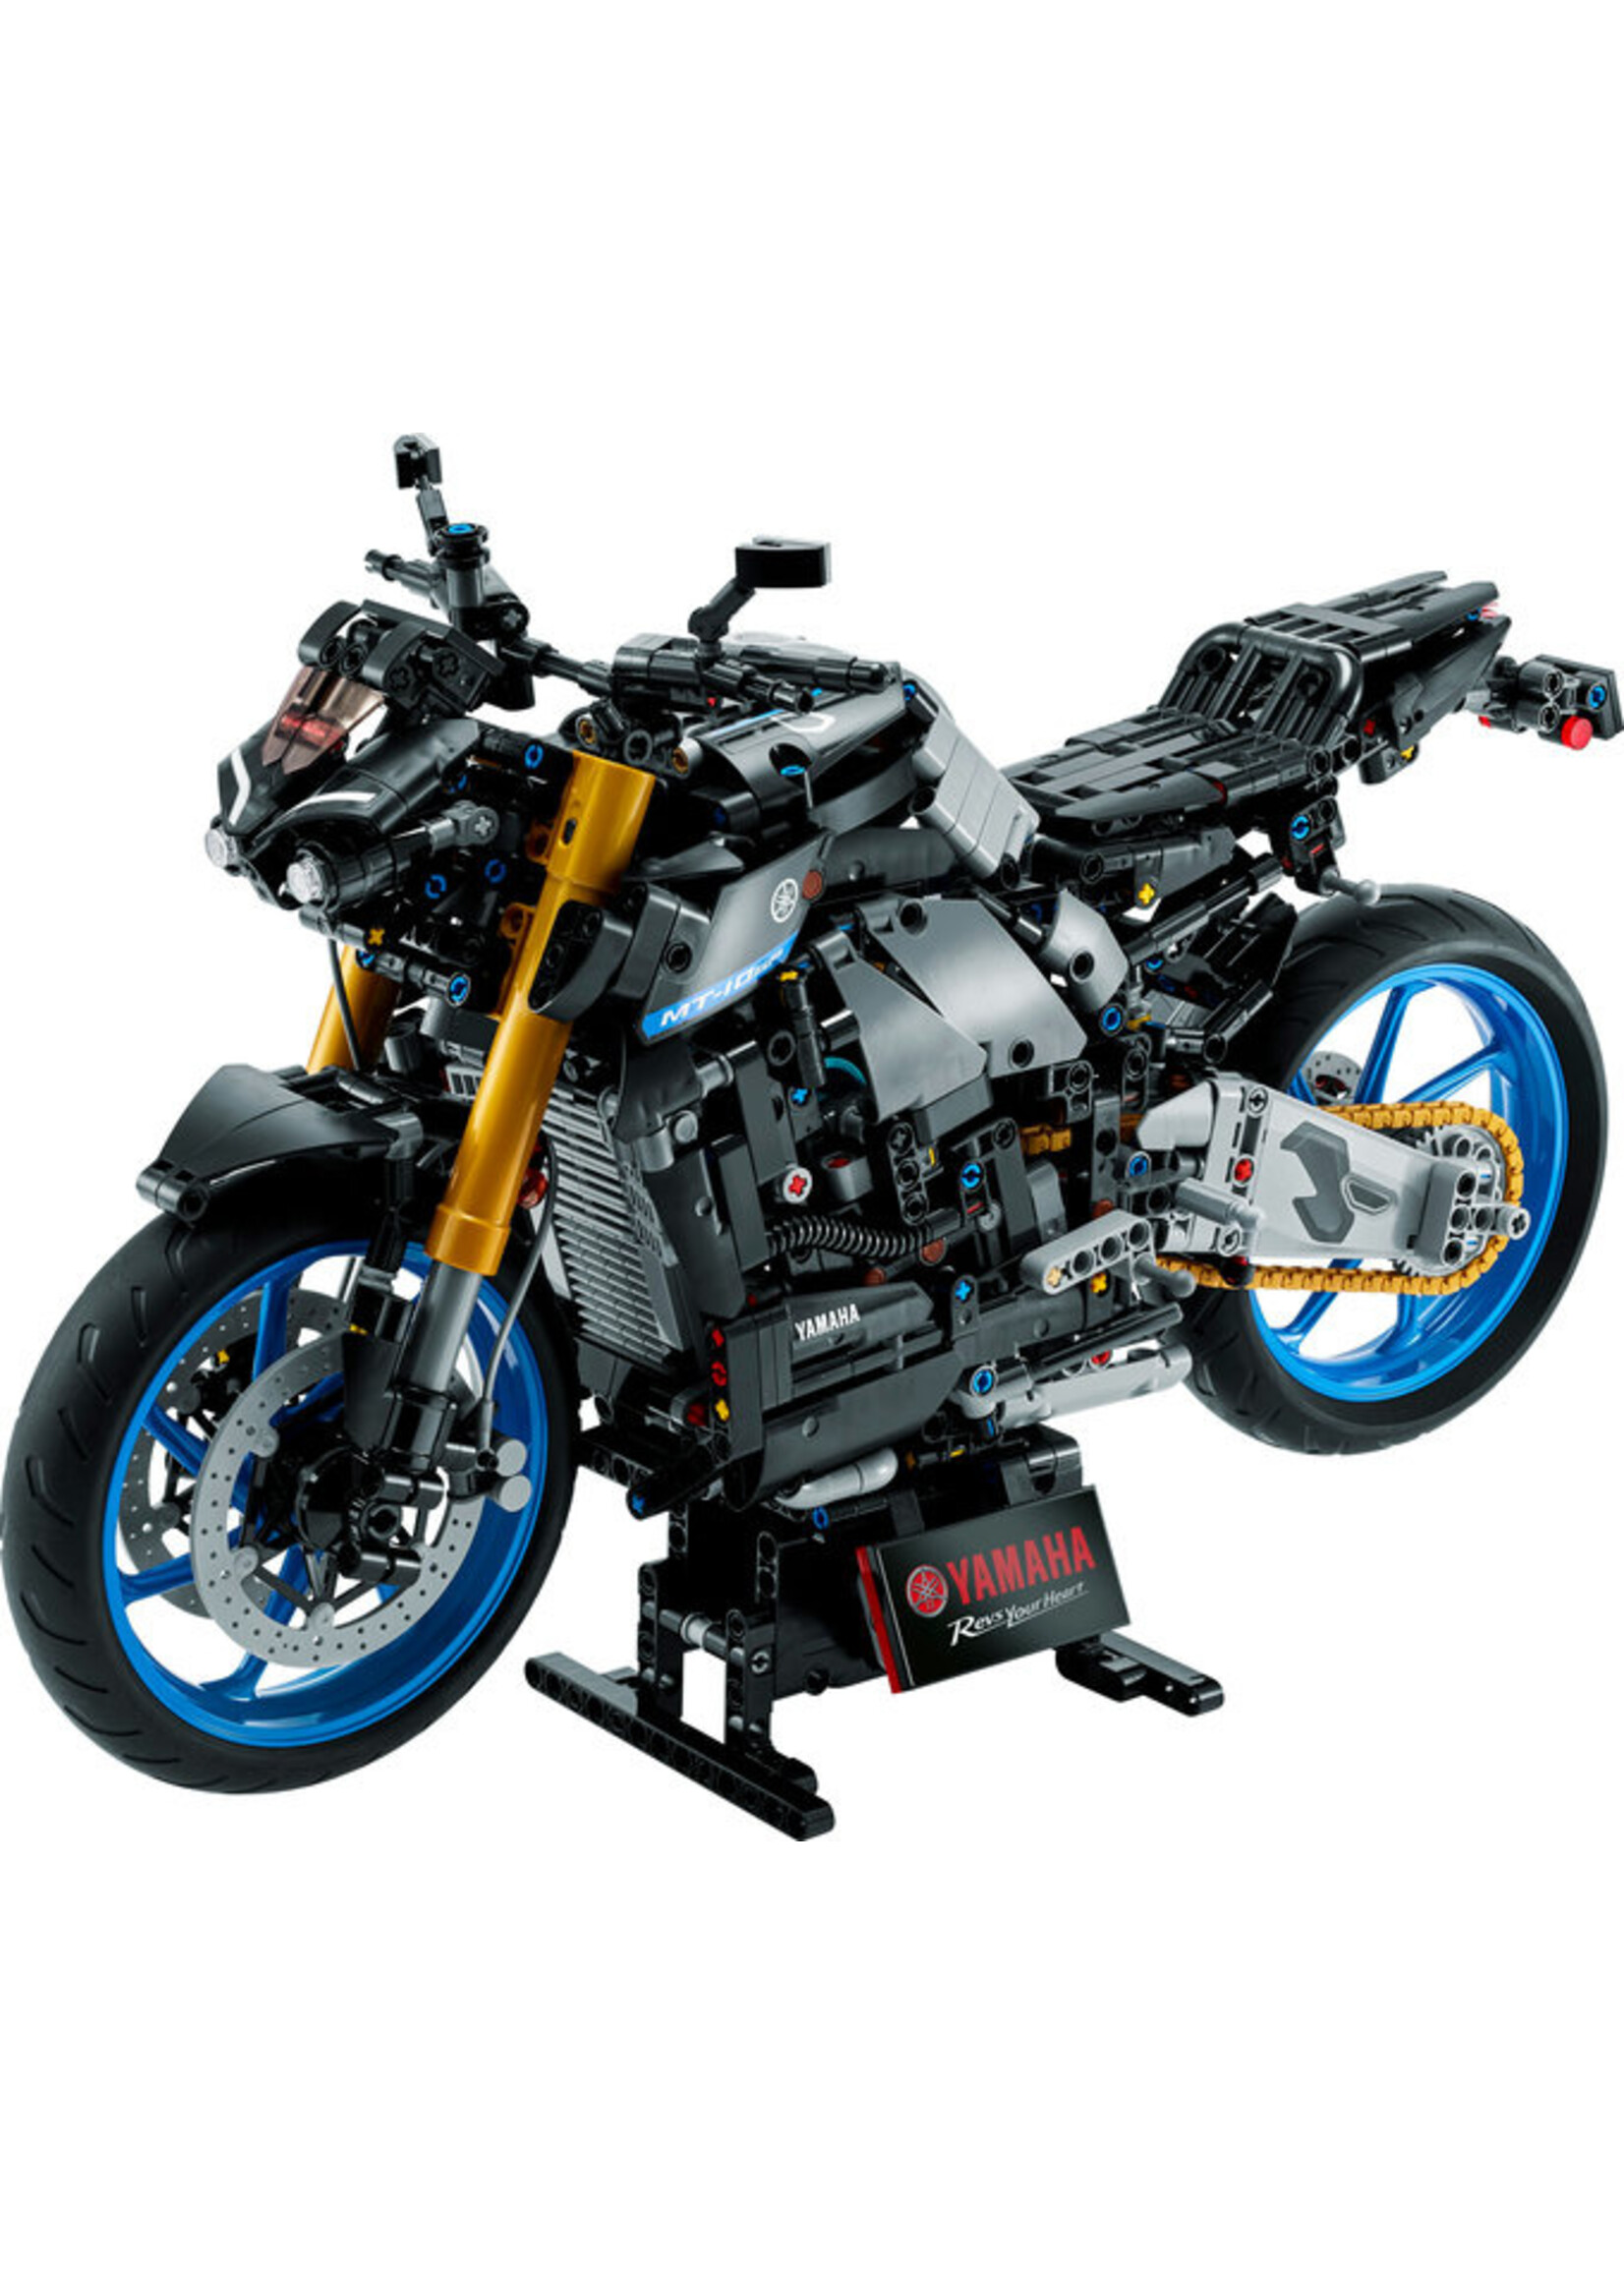 LEGO 42159 - Yamaha MT-10 SP V39